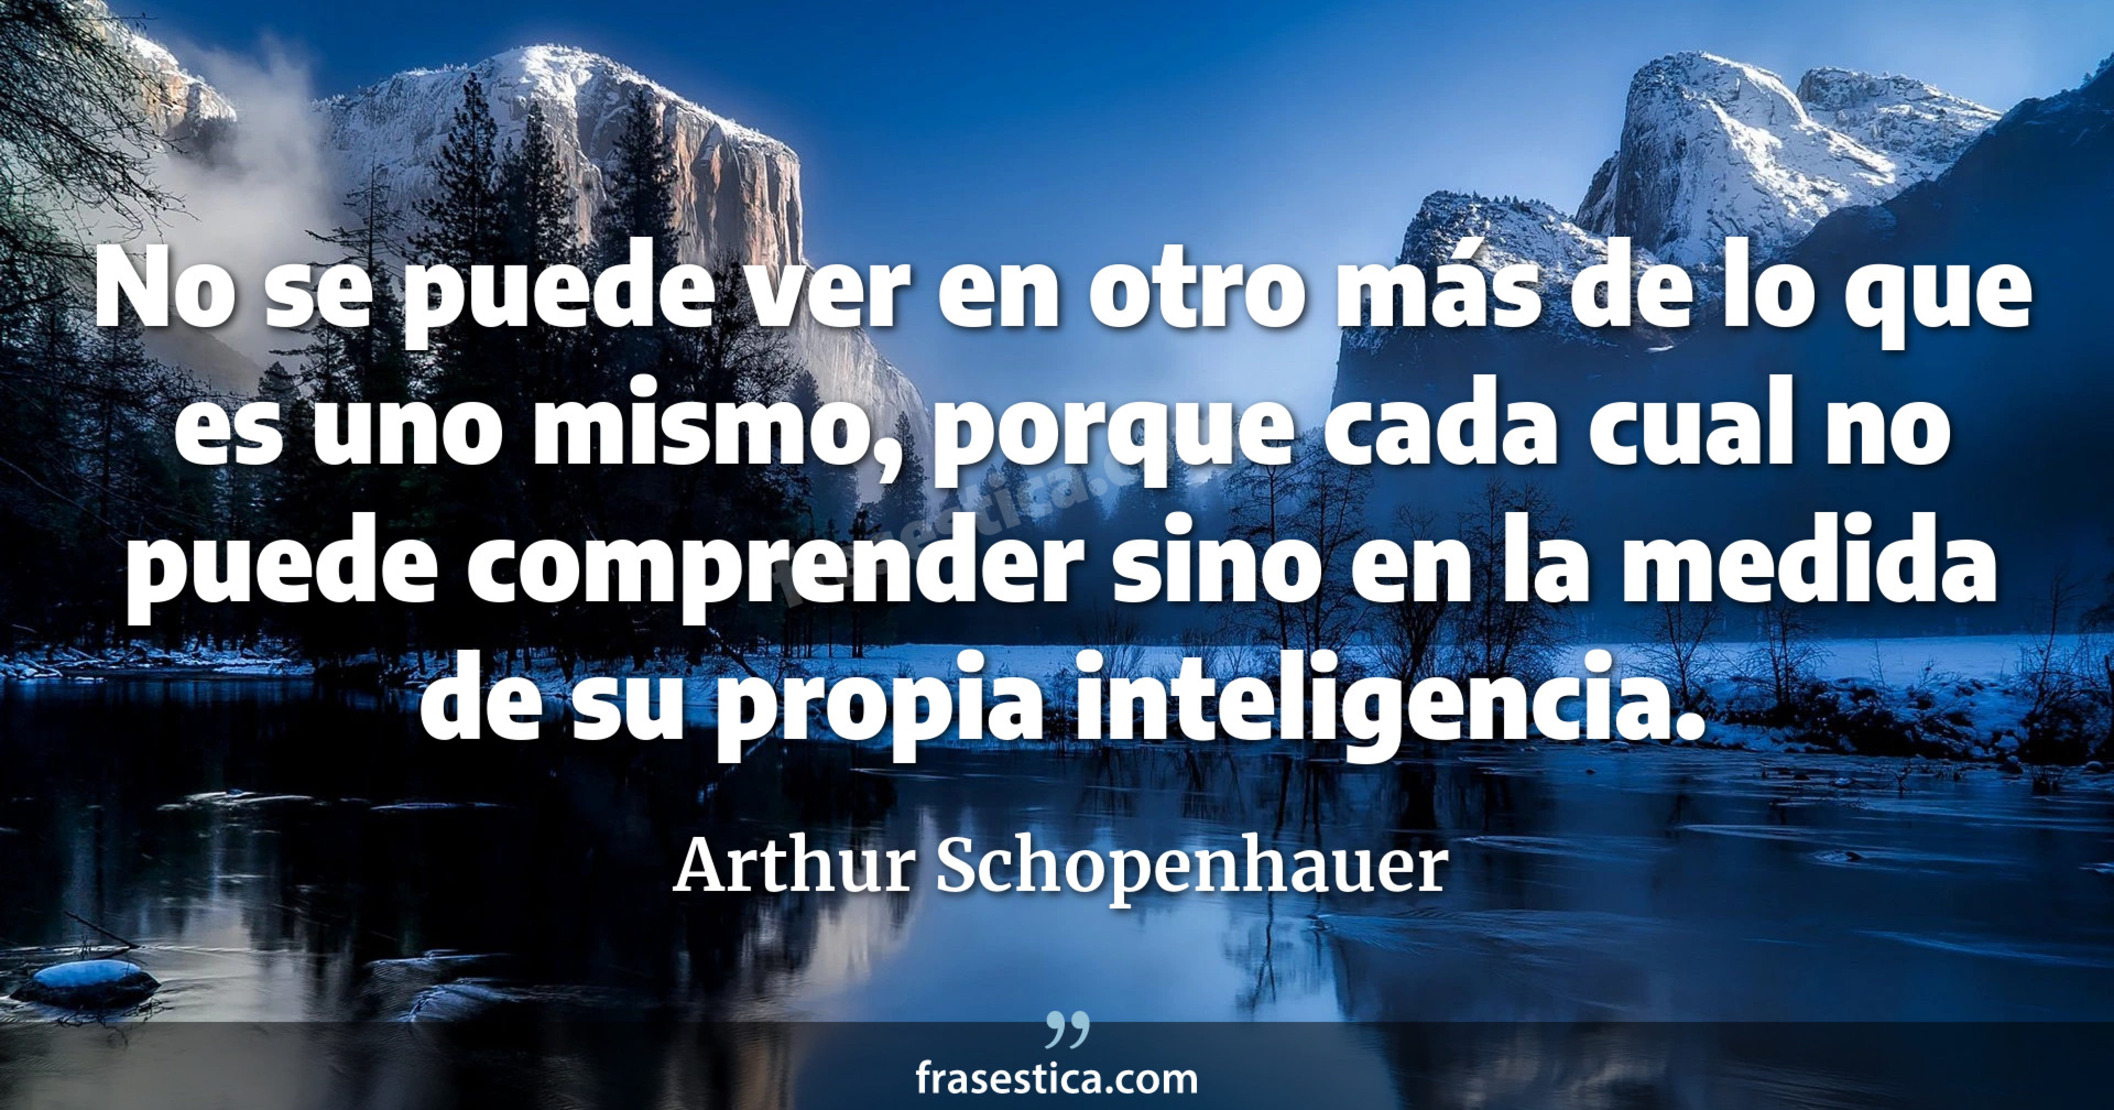 No se puede ver en otro más de lo que es uno mismo, porque cada cual no puede comprender sino en la medida de su propia inteligencia. - Arthur Schopenhauer